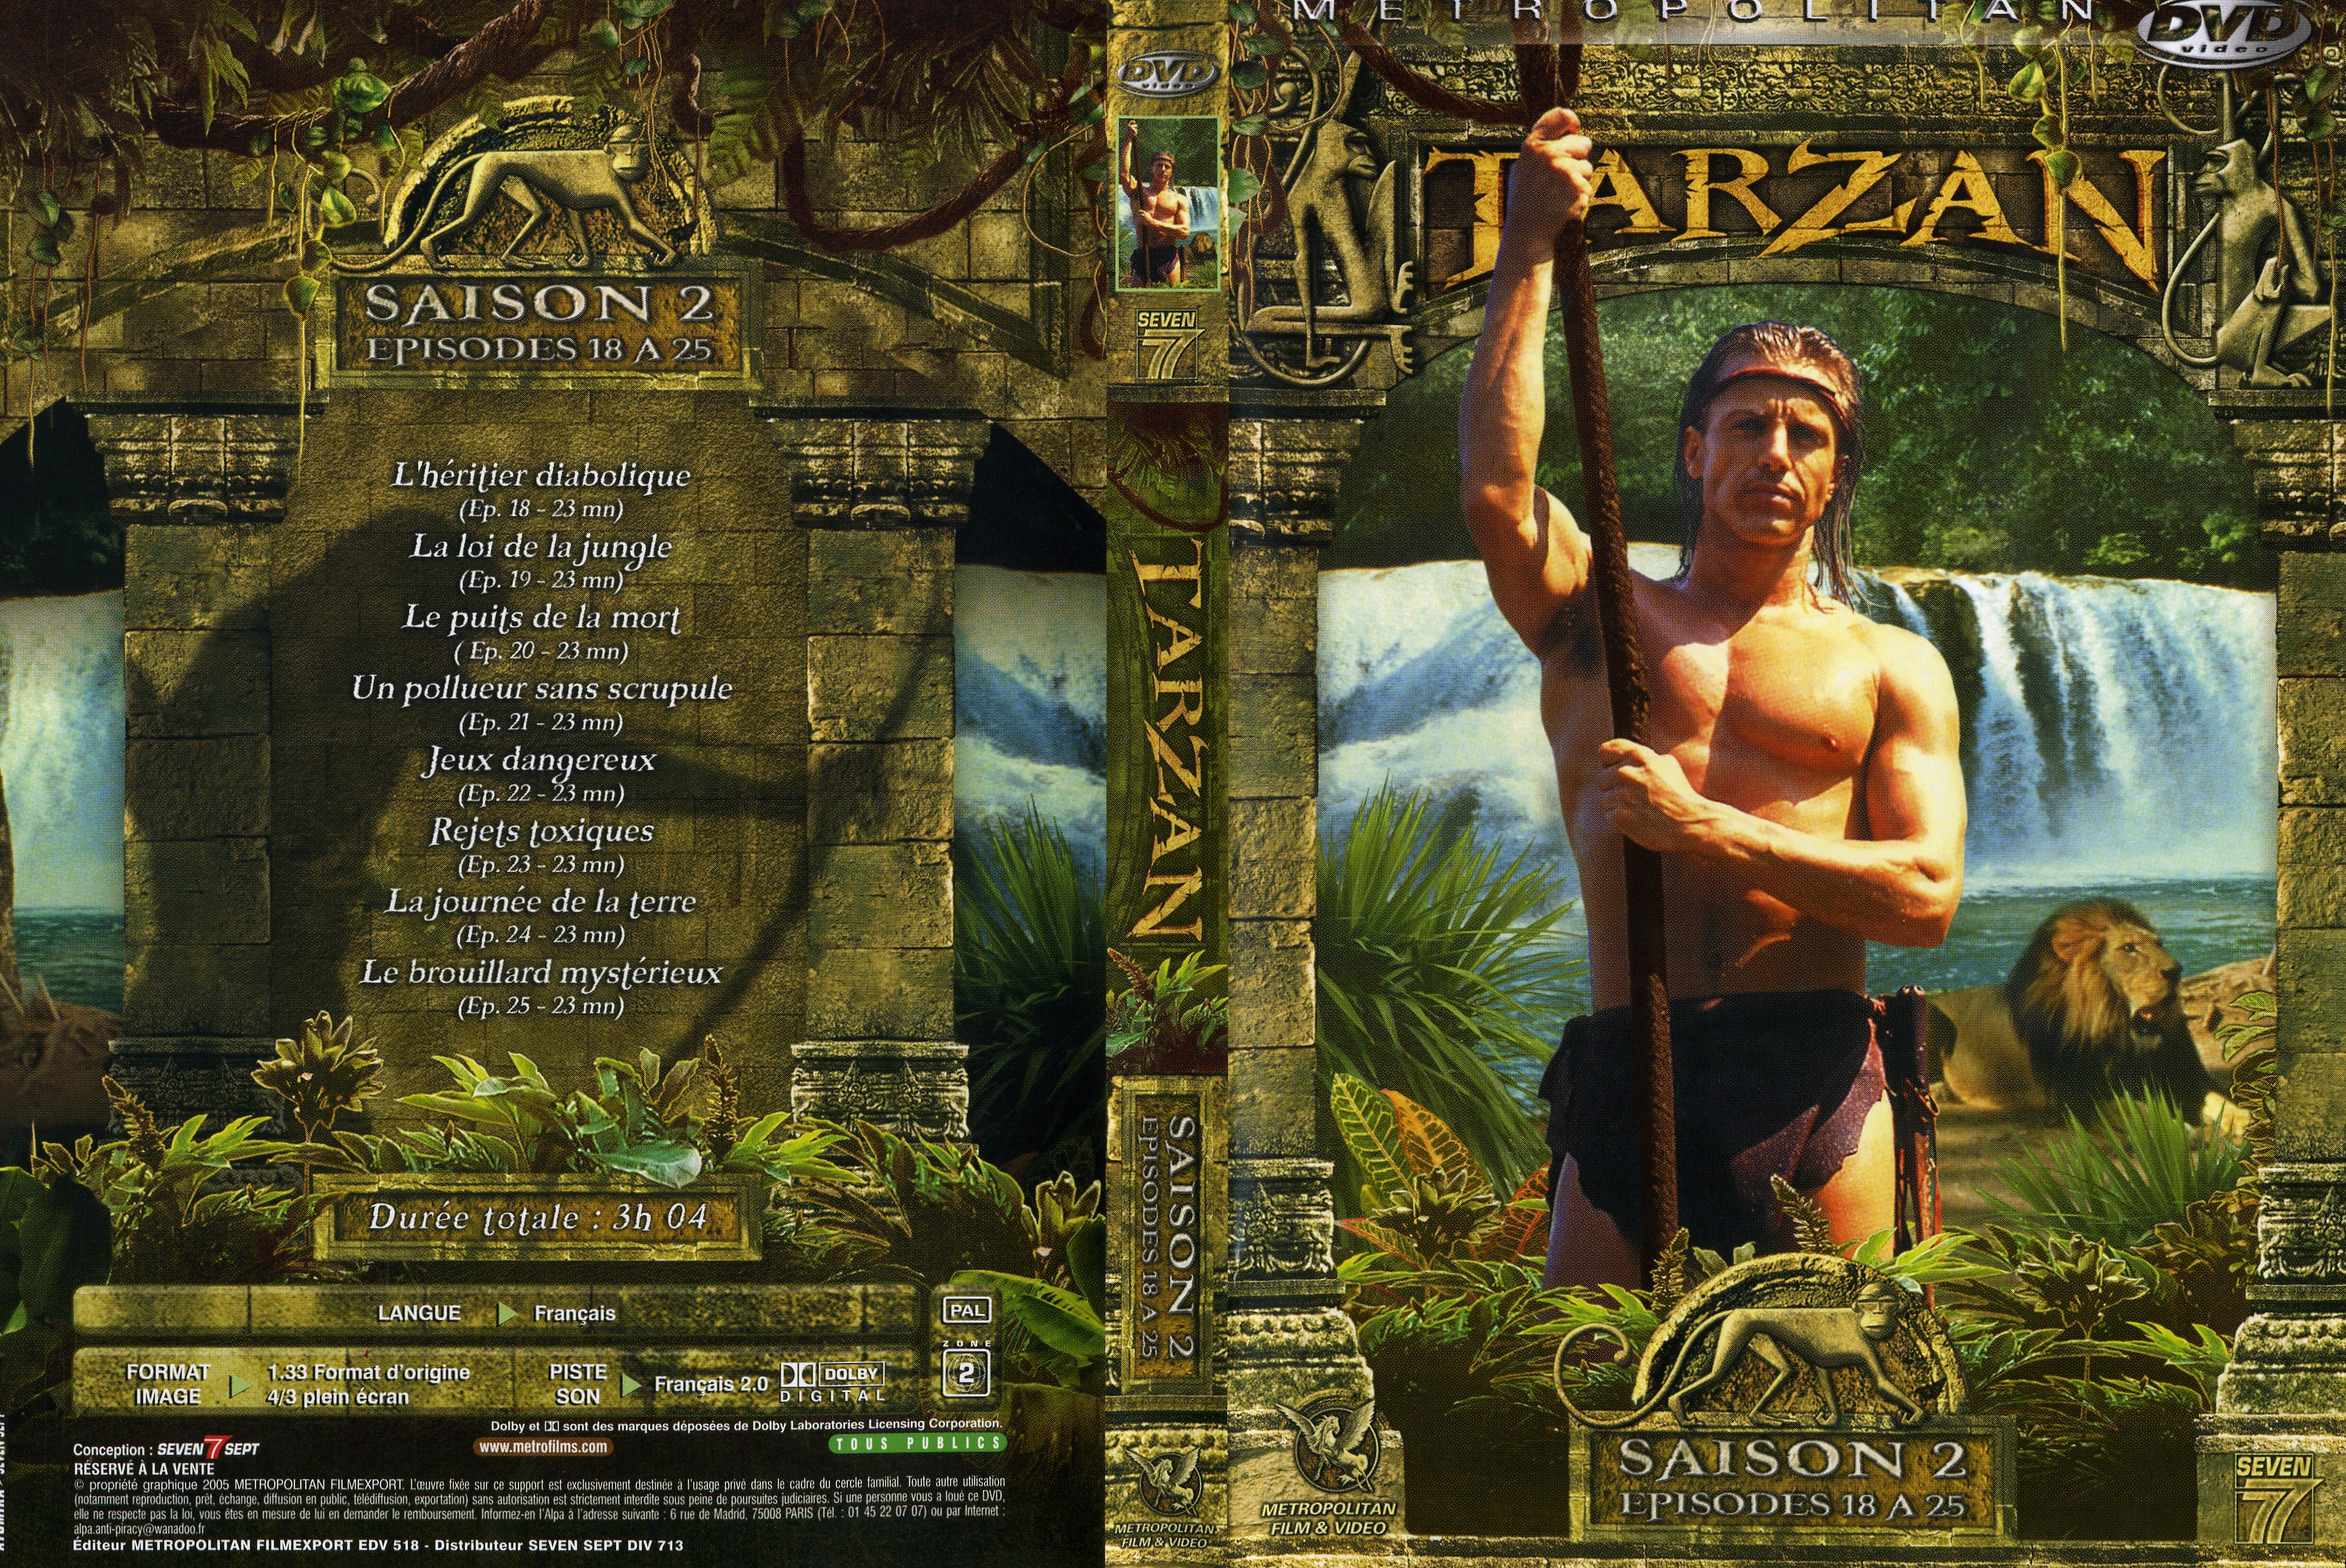 Jaquette DVD Tarzan Saison 2 DVD 3